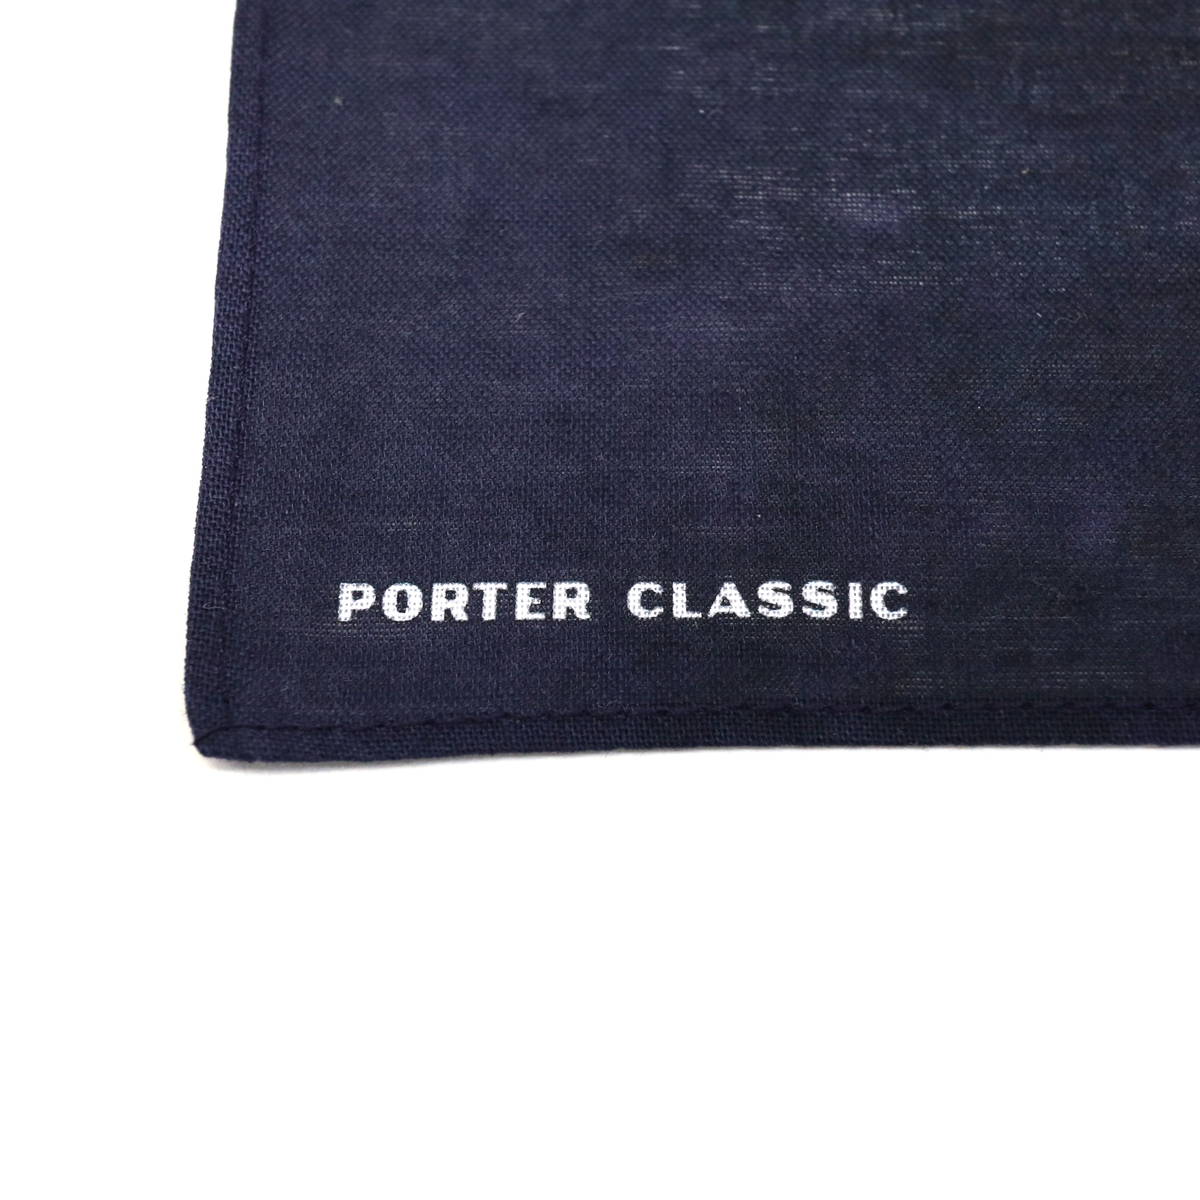 Porter Classic ポータークラシック DISNEY FANTASIA PORTER CLASSIC